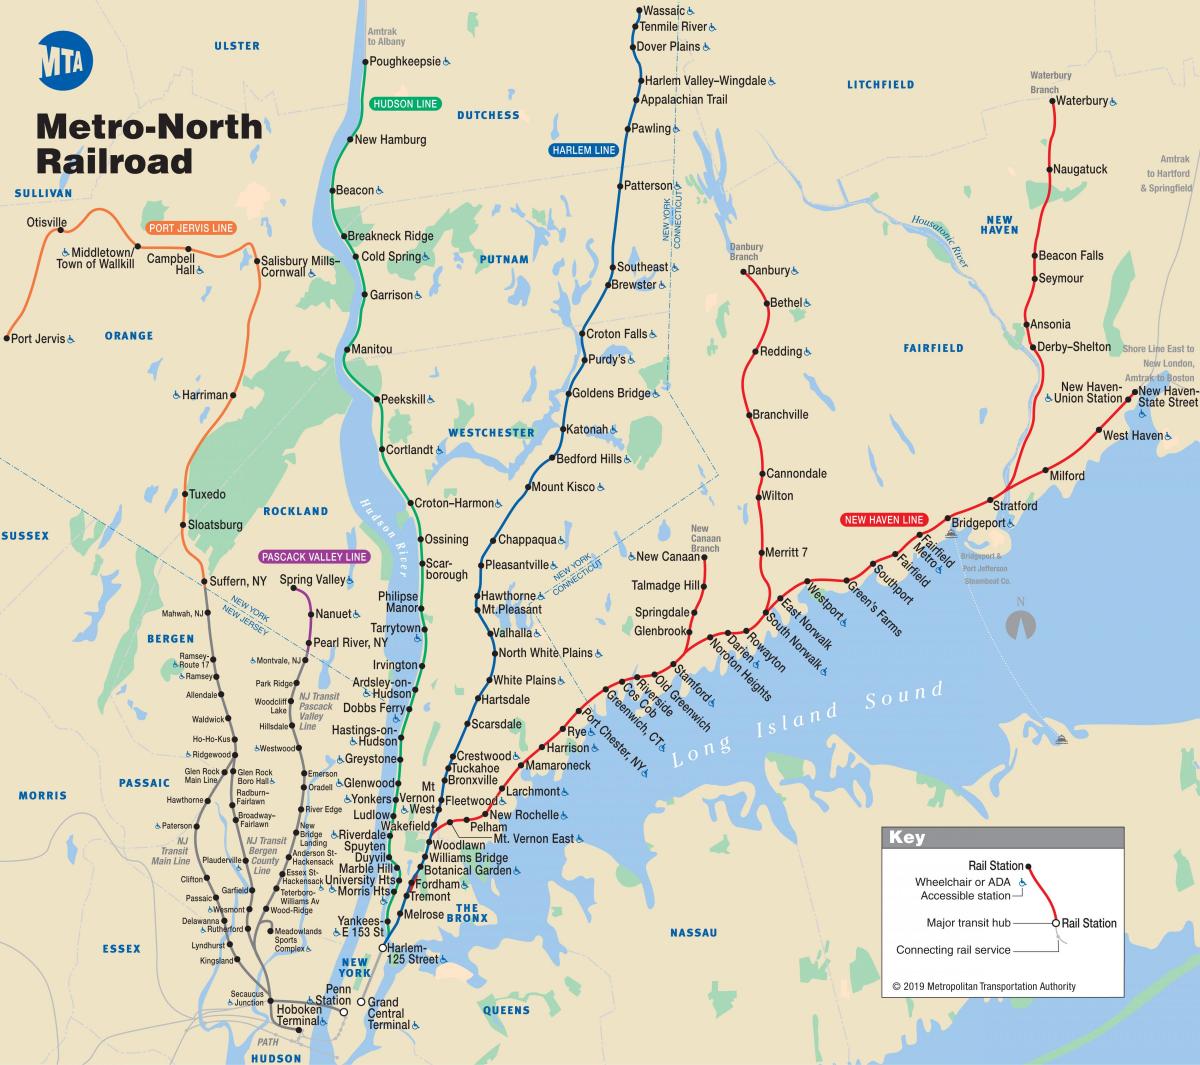 Нью-Йоркское метро Северный карте